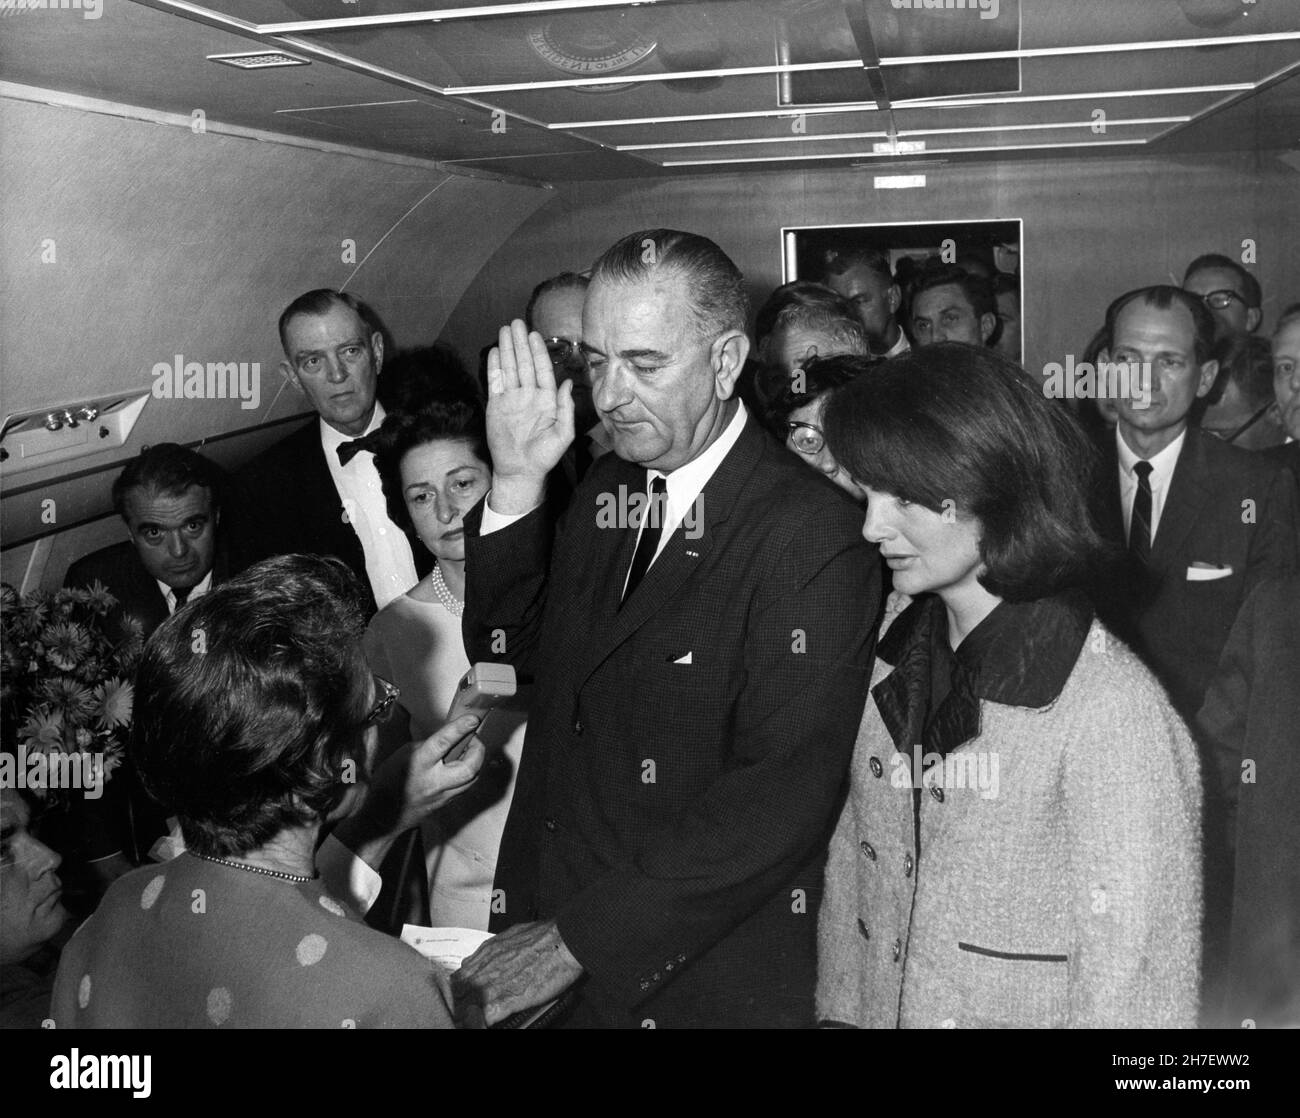 DALLAS, TEXAS, USA - 22 novembre 1963 - il vicepresidente Lyndon B Johnson presta giuramento a bordo dell'Air Force One presso l'aeroporto Love Field per due ore Foto Stock